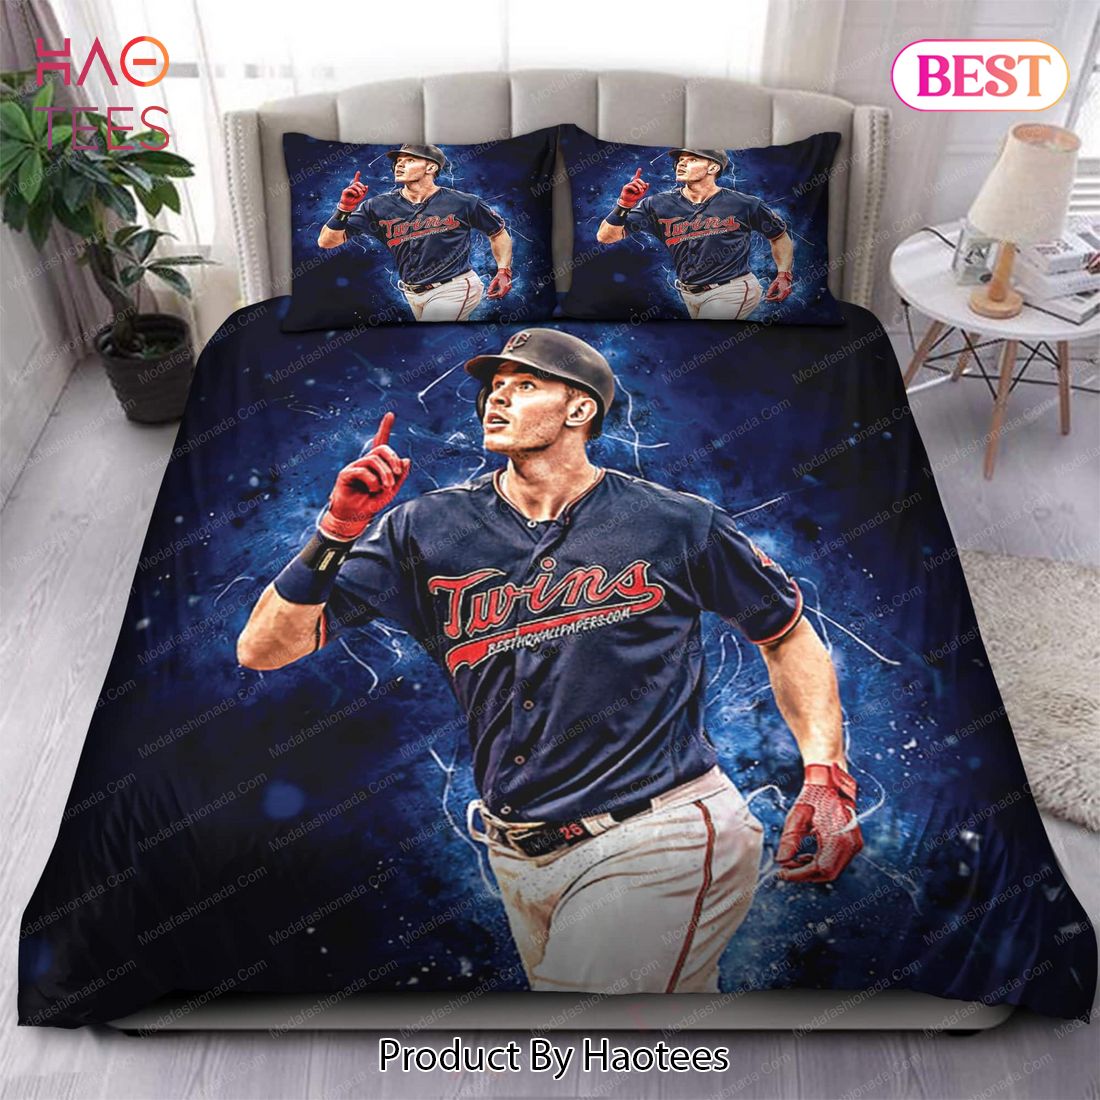 Buy Max Kepler Minnesota Twins MLB 122 Bedding Sets Bed Sets, Bedroom Sets, Comforter Sets, Duvet Cover, Bedspread